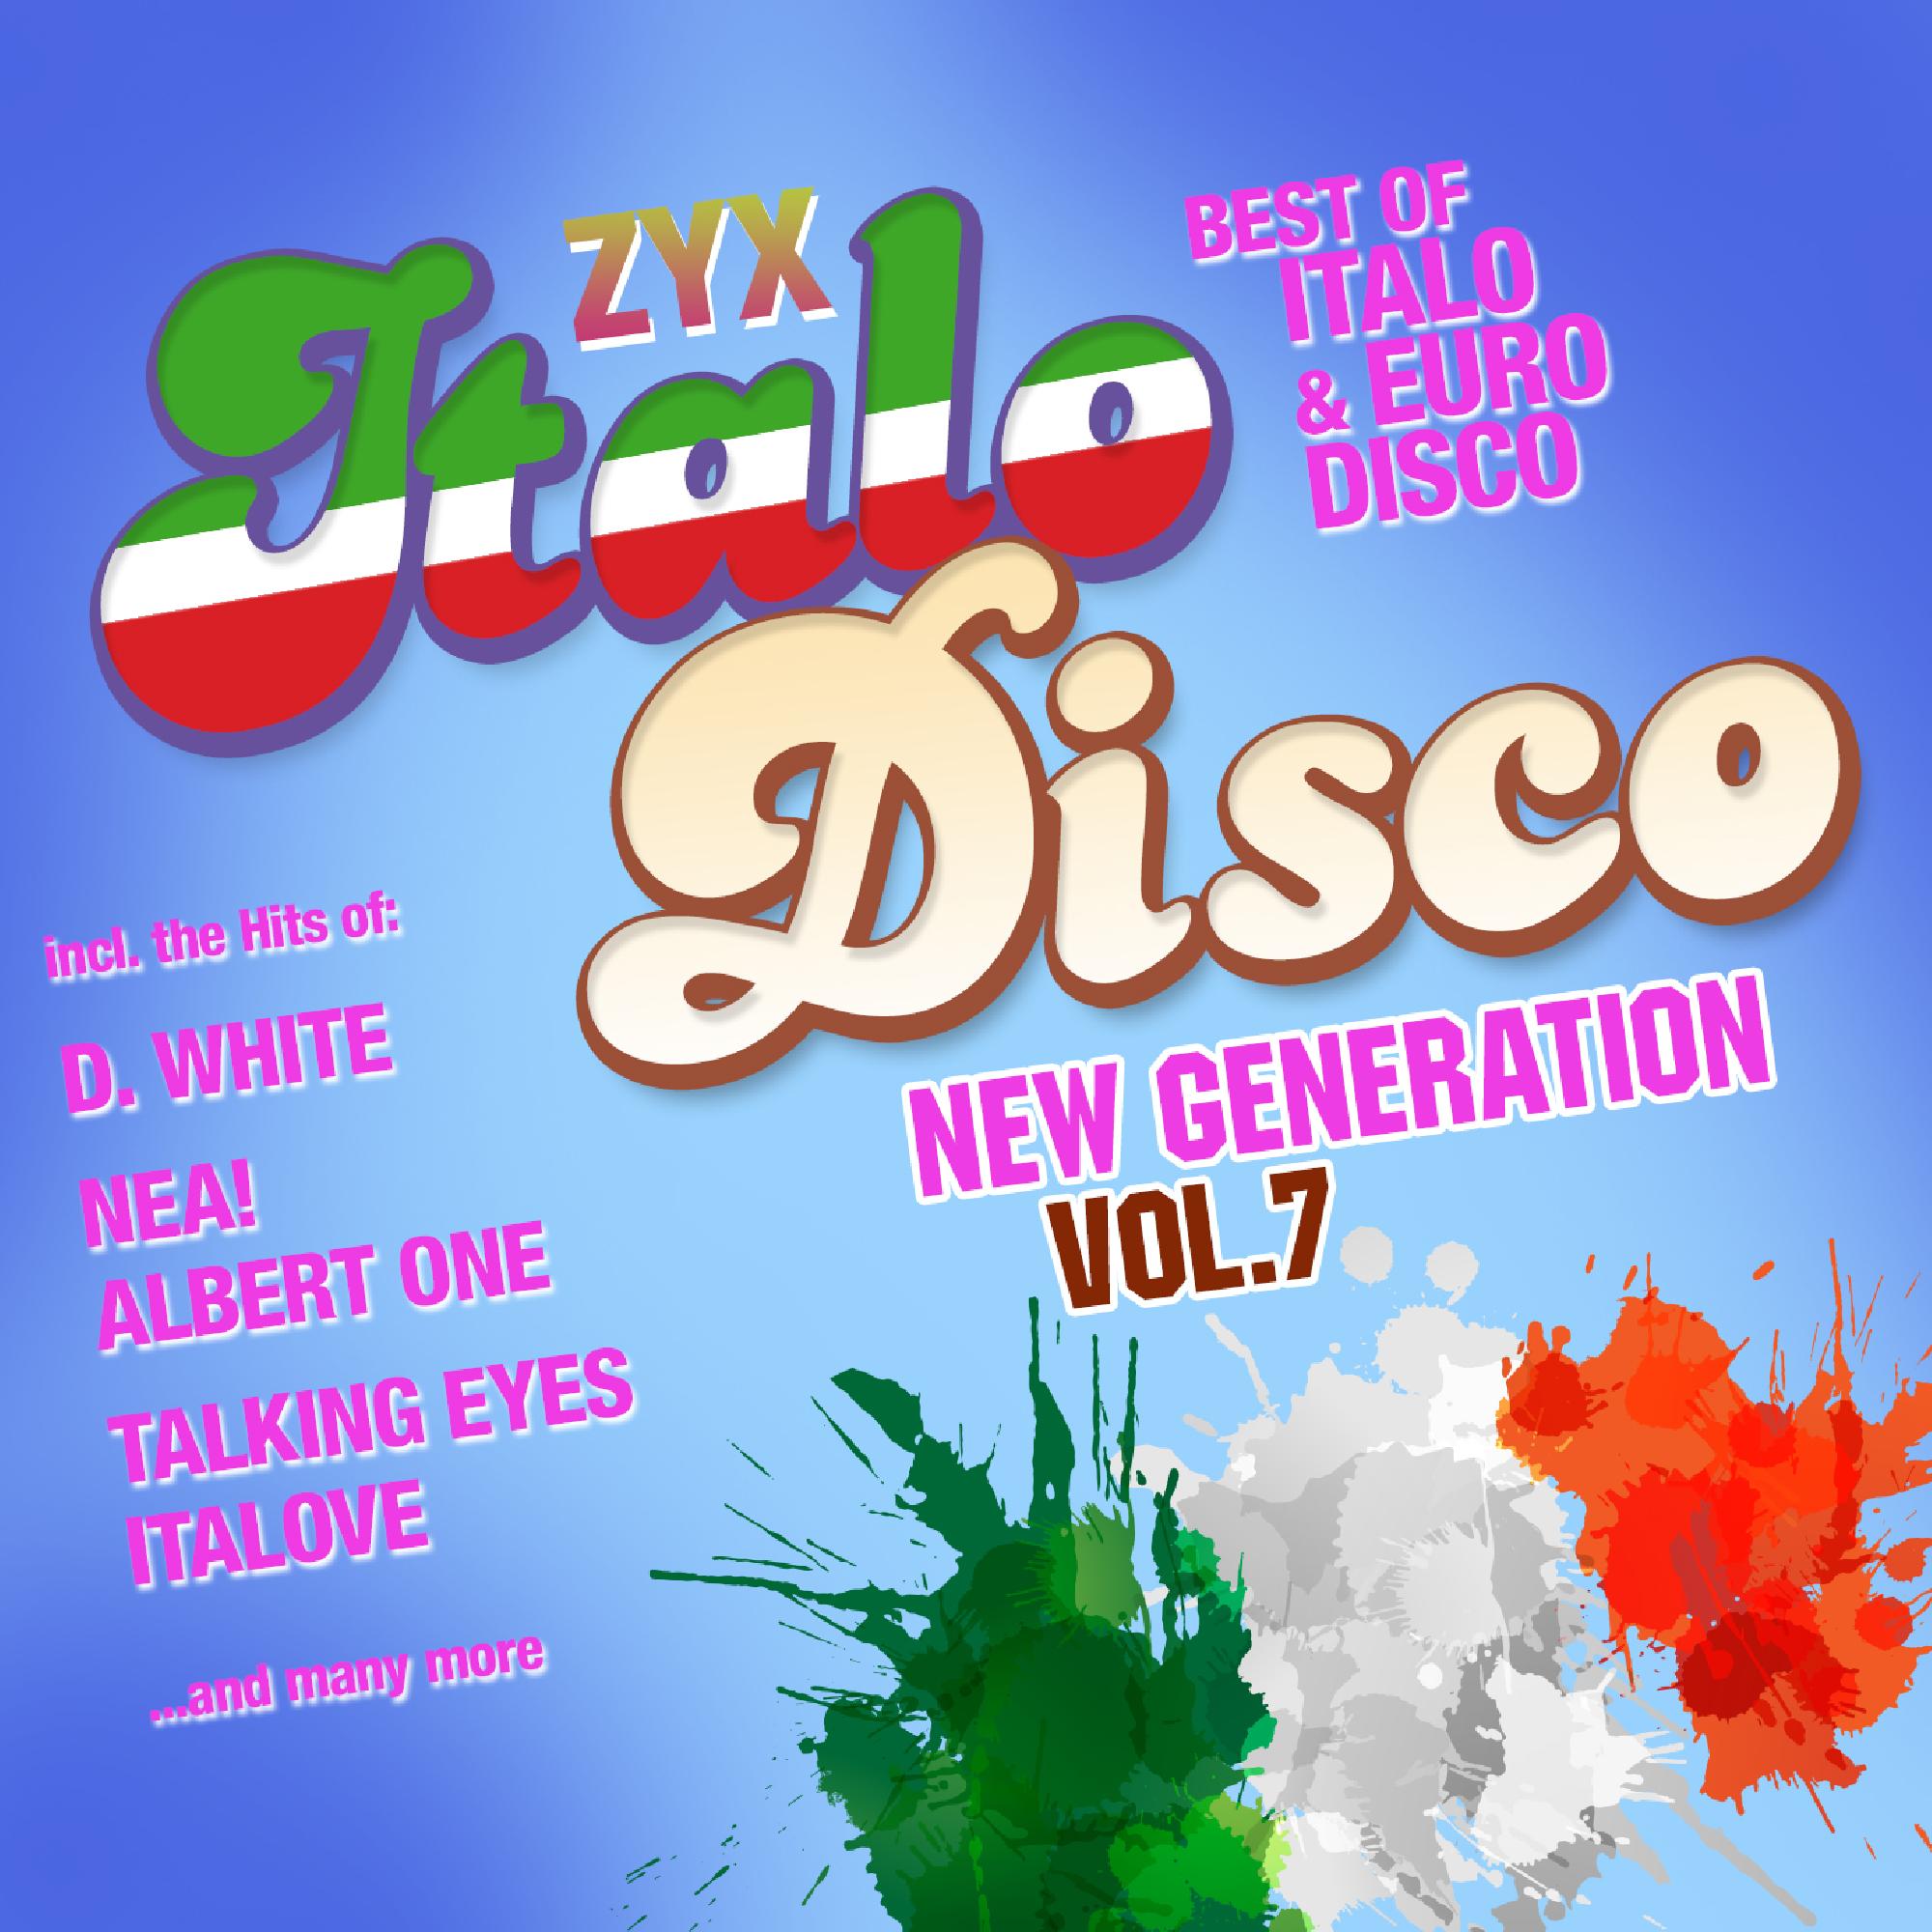 Zyx italo disco new. ZYX Italo Disco New Generation Vol 7 CD 1. ZYX Italo Disco New Generation Vol 7 CD 2. Va - ZYX Italo Disco New Generation 20.